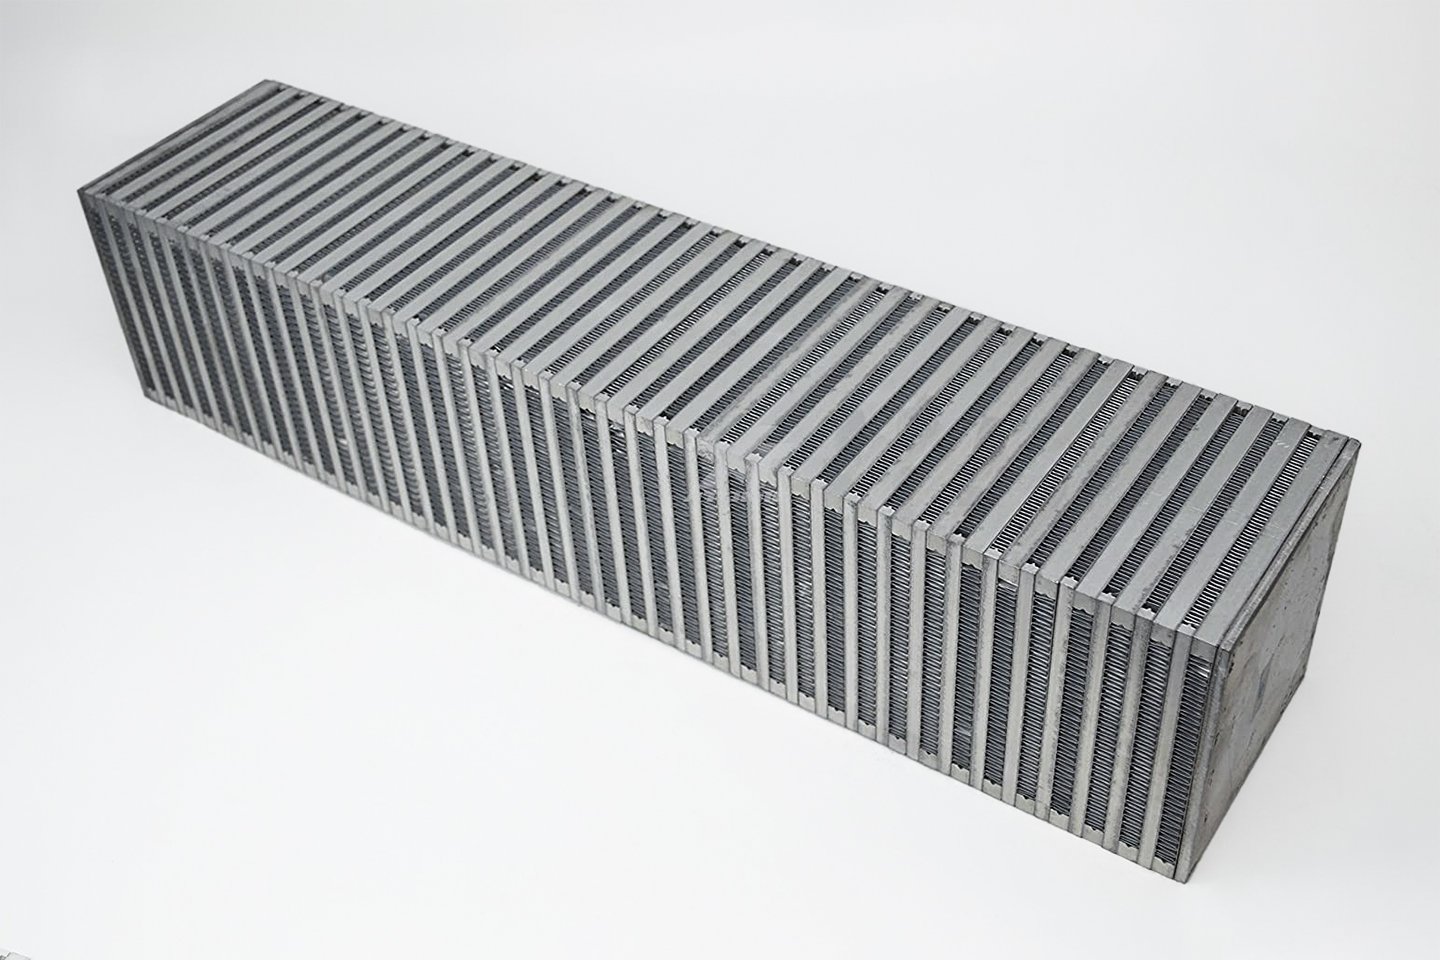 High-Performance Bar & Plate Intercooler Core, 27" x 6" x 6", Vertical Flow, Universal Core